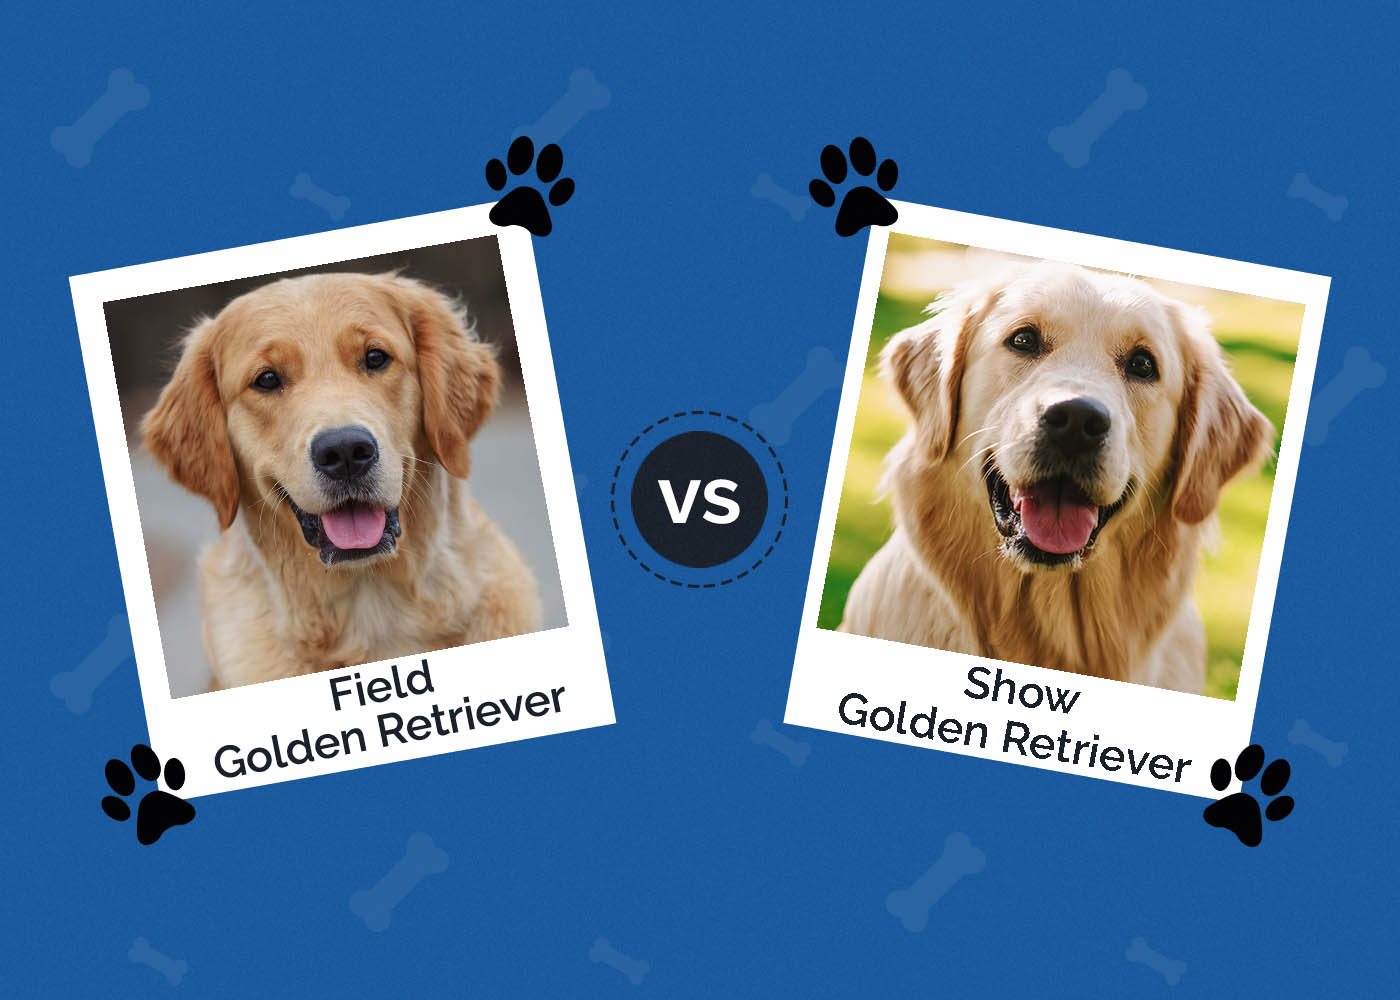 Field Golden Retriever vs Show Golden Retriever